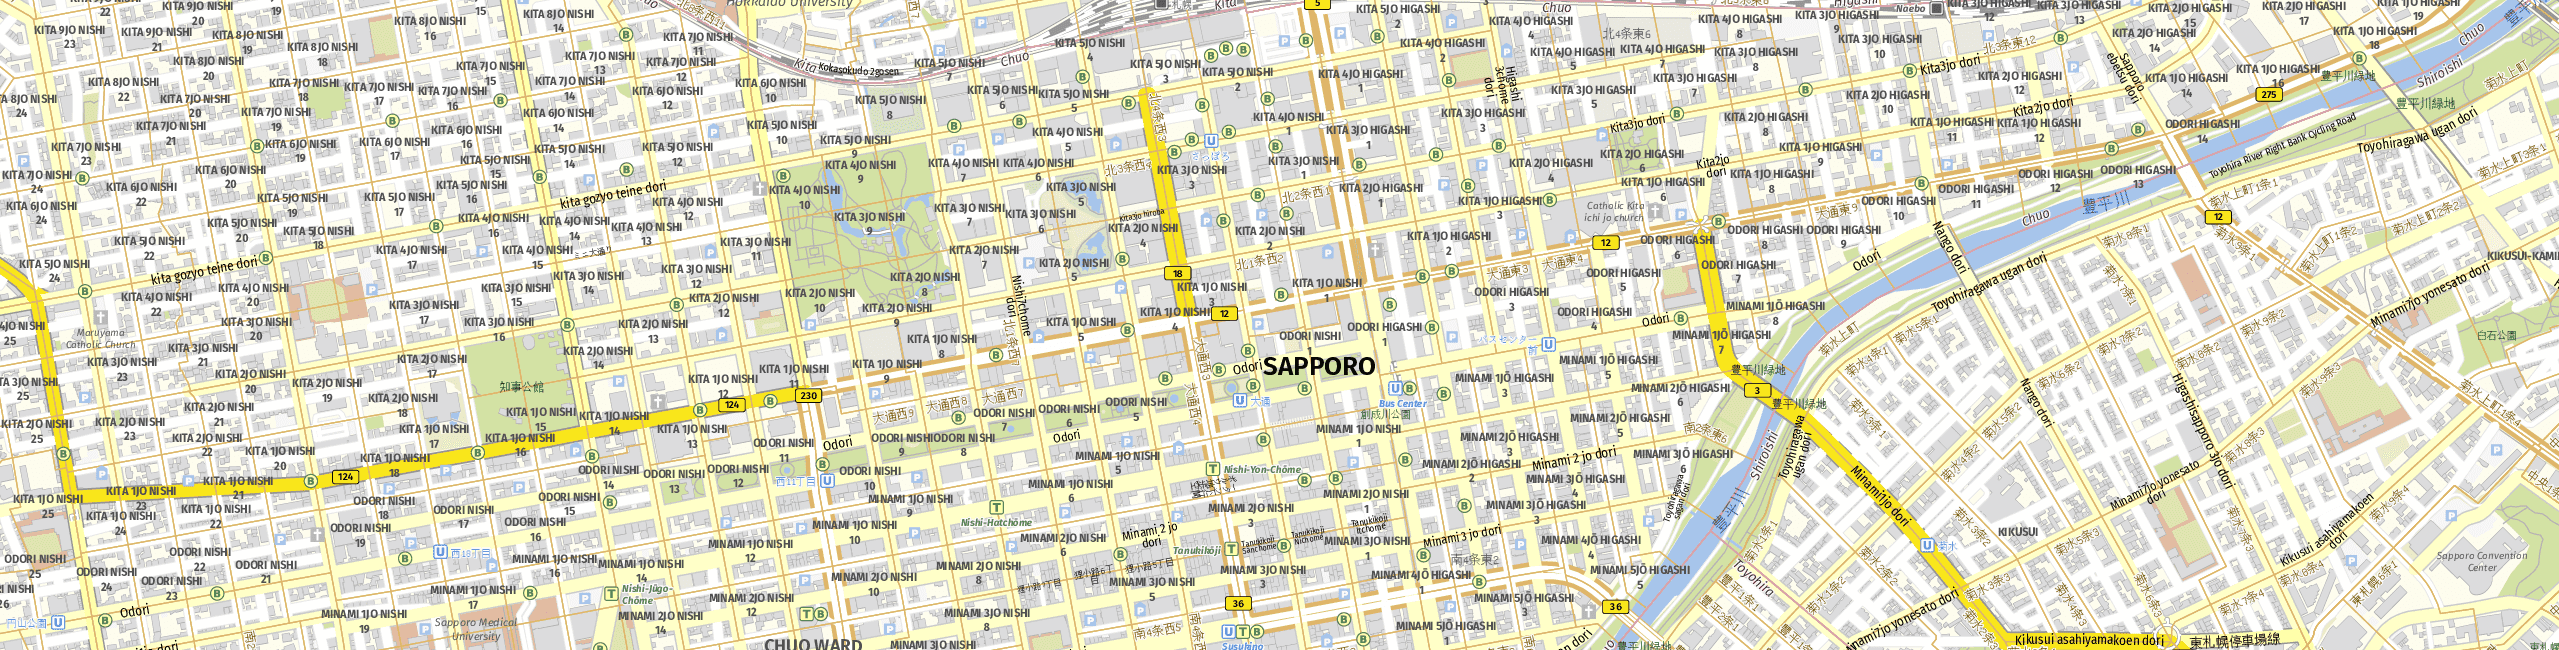 Stadtplan Sapporo zum Downloaden.